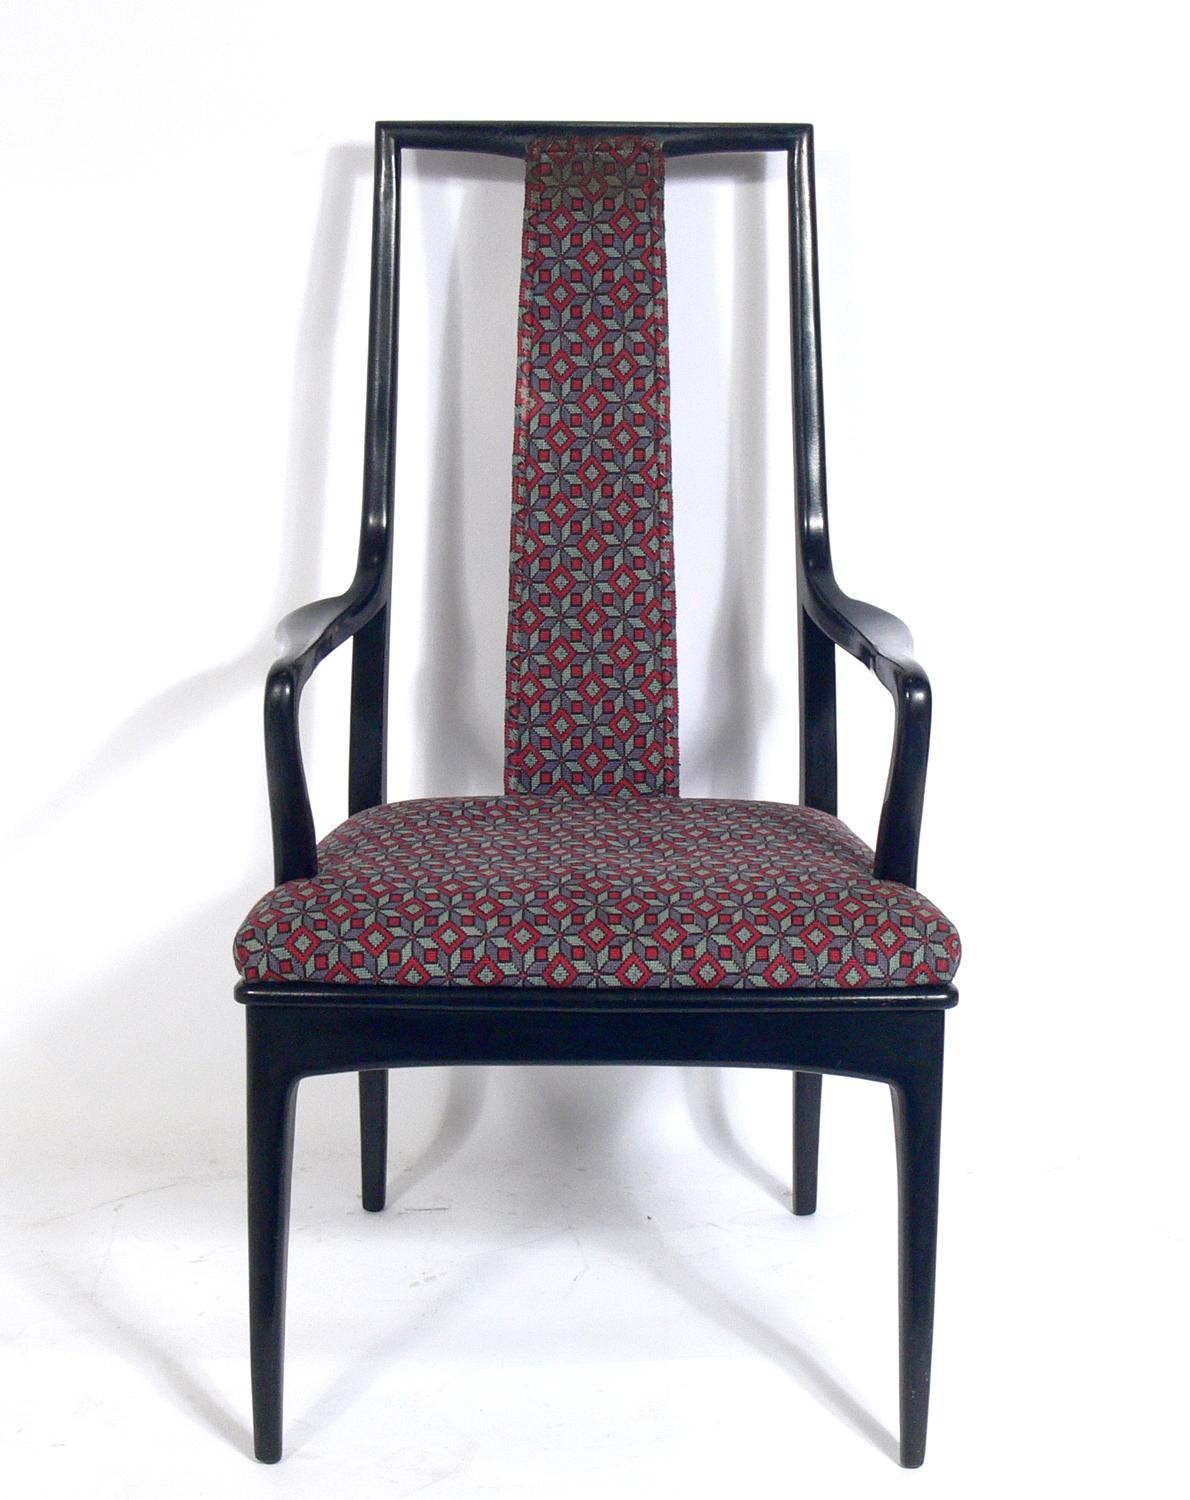 Satz von acht asiatisch inspirierten Esszimmerstühlen mit hoher Rückenlehne, ursprünglich vertrieben durch John Stuart NYC, amerikanisch, ca. 1960er Jahre. Sanft geschwungene Rückenlehnen und elegant verjüngte Beine. Diese Stühle werden derzeit